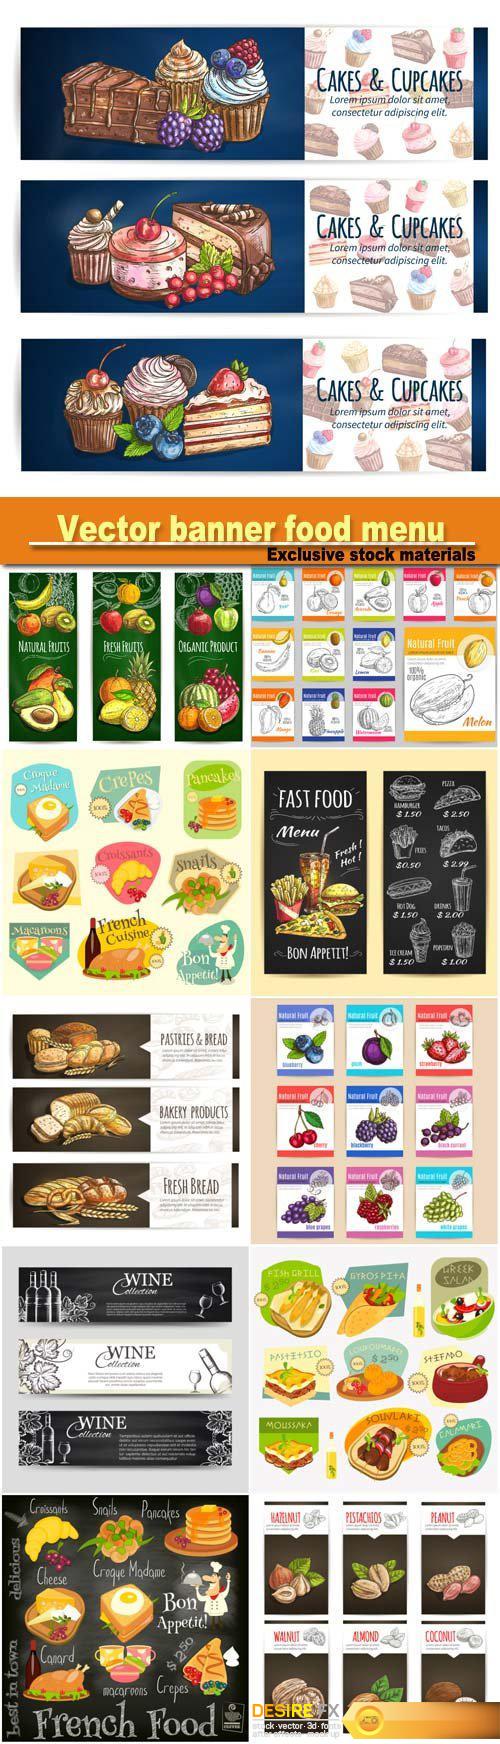 Vector banner food menu, cafe leaflet, pastry shop signboard